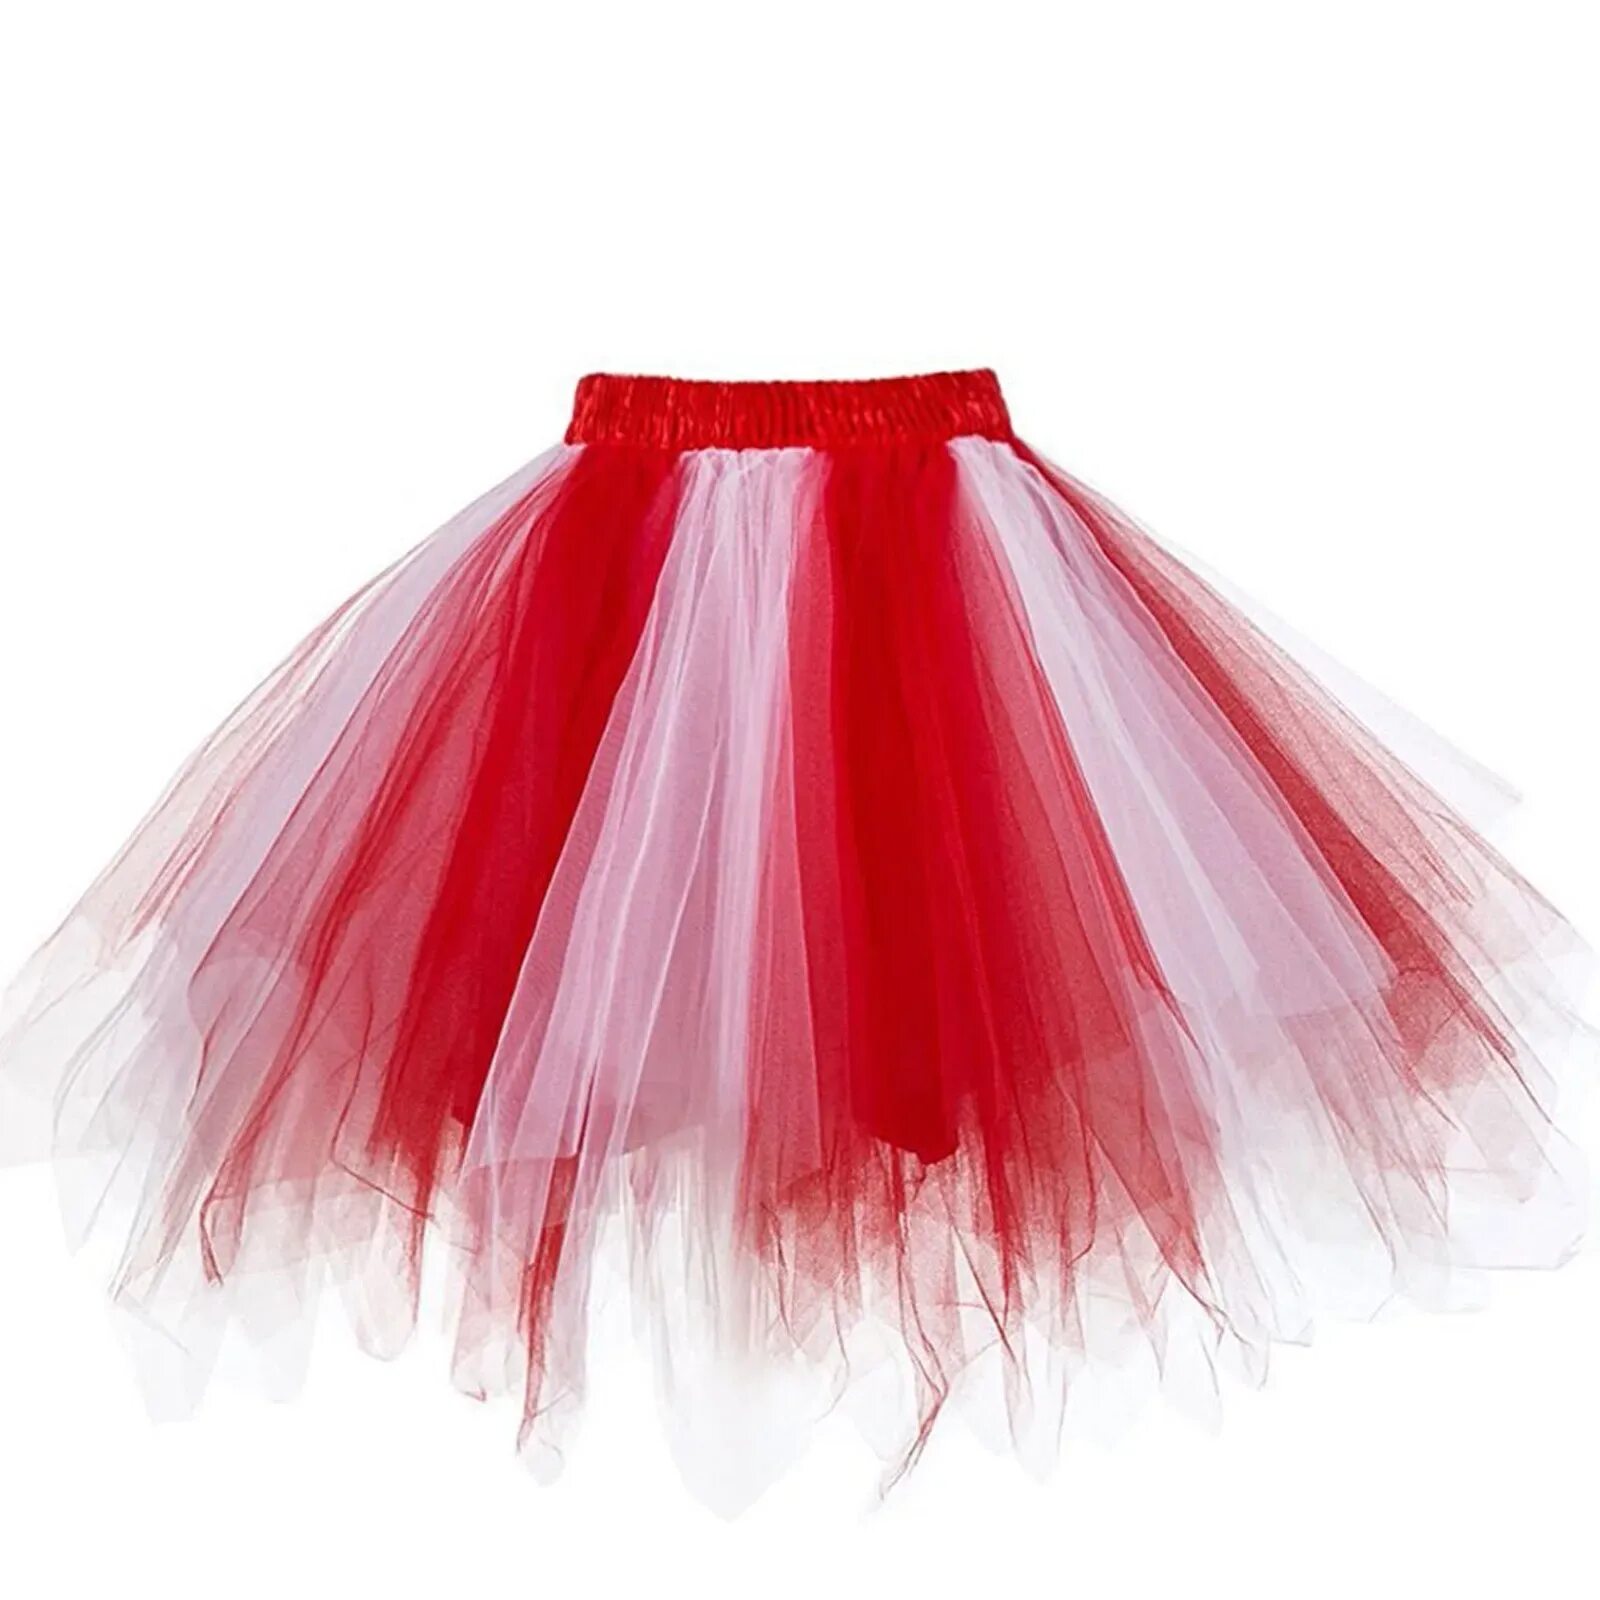 Фатин красный. Юбка пачка. Красная фатиновая юбка для девочки. Красная фатиновая юбка. Красная юбка пачка.